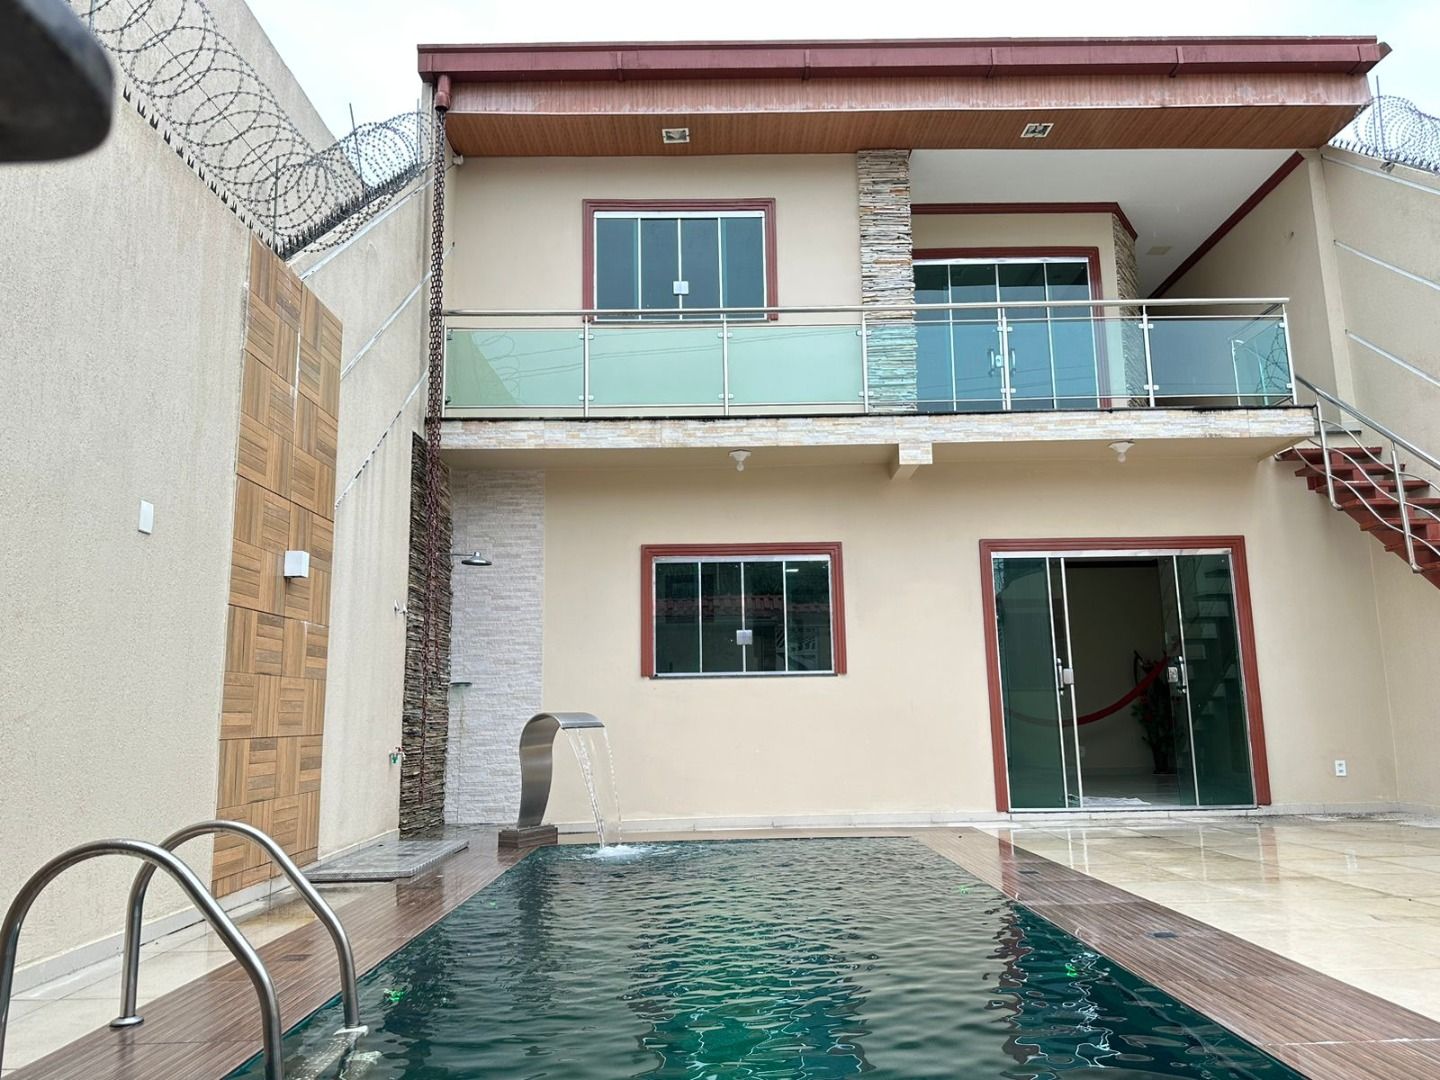 Casa com 5 dormitórios sendo 3 suites à venda, 350 m² por RS 650.000 - Flores - Manaus-AM - Nao Fina